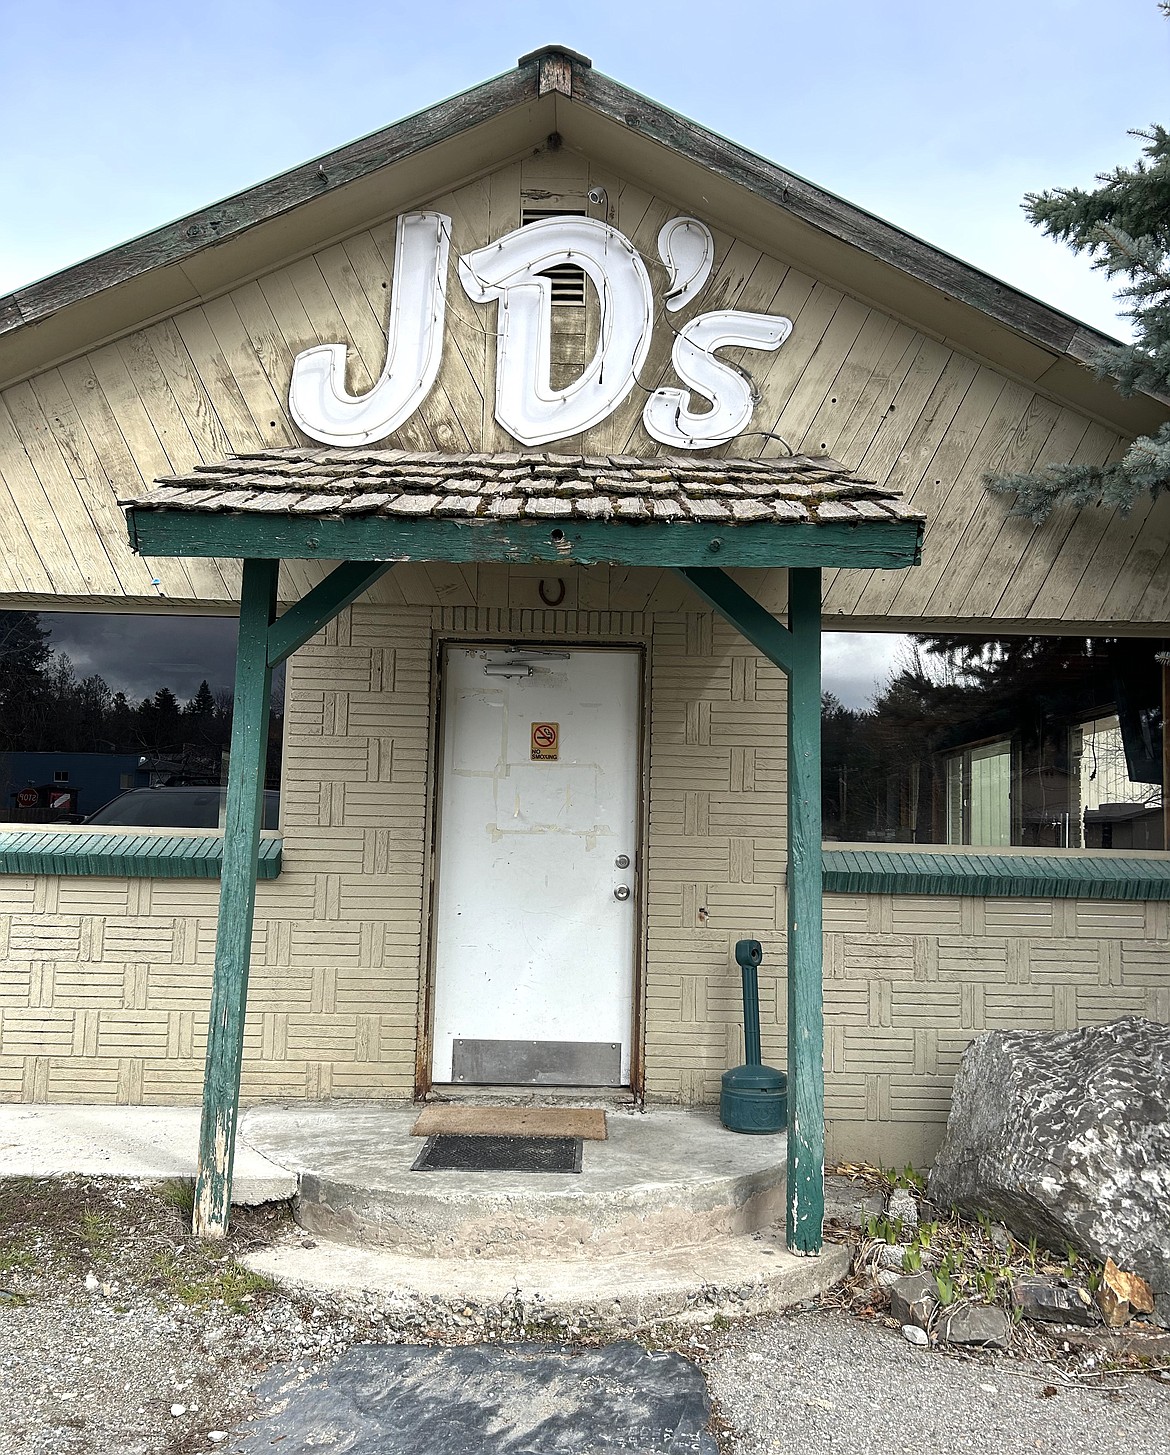 The front door to JD's restaurant.